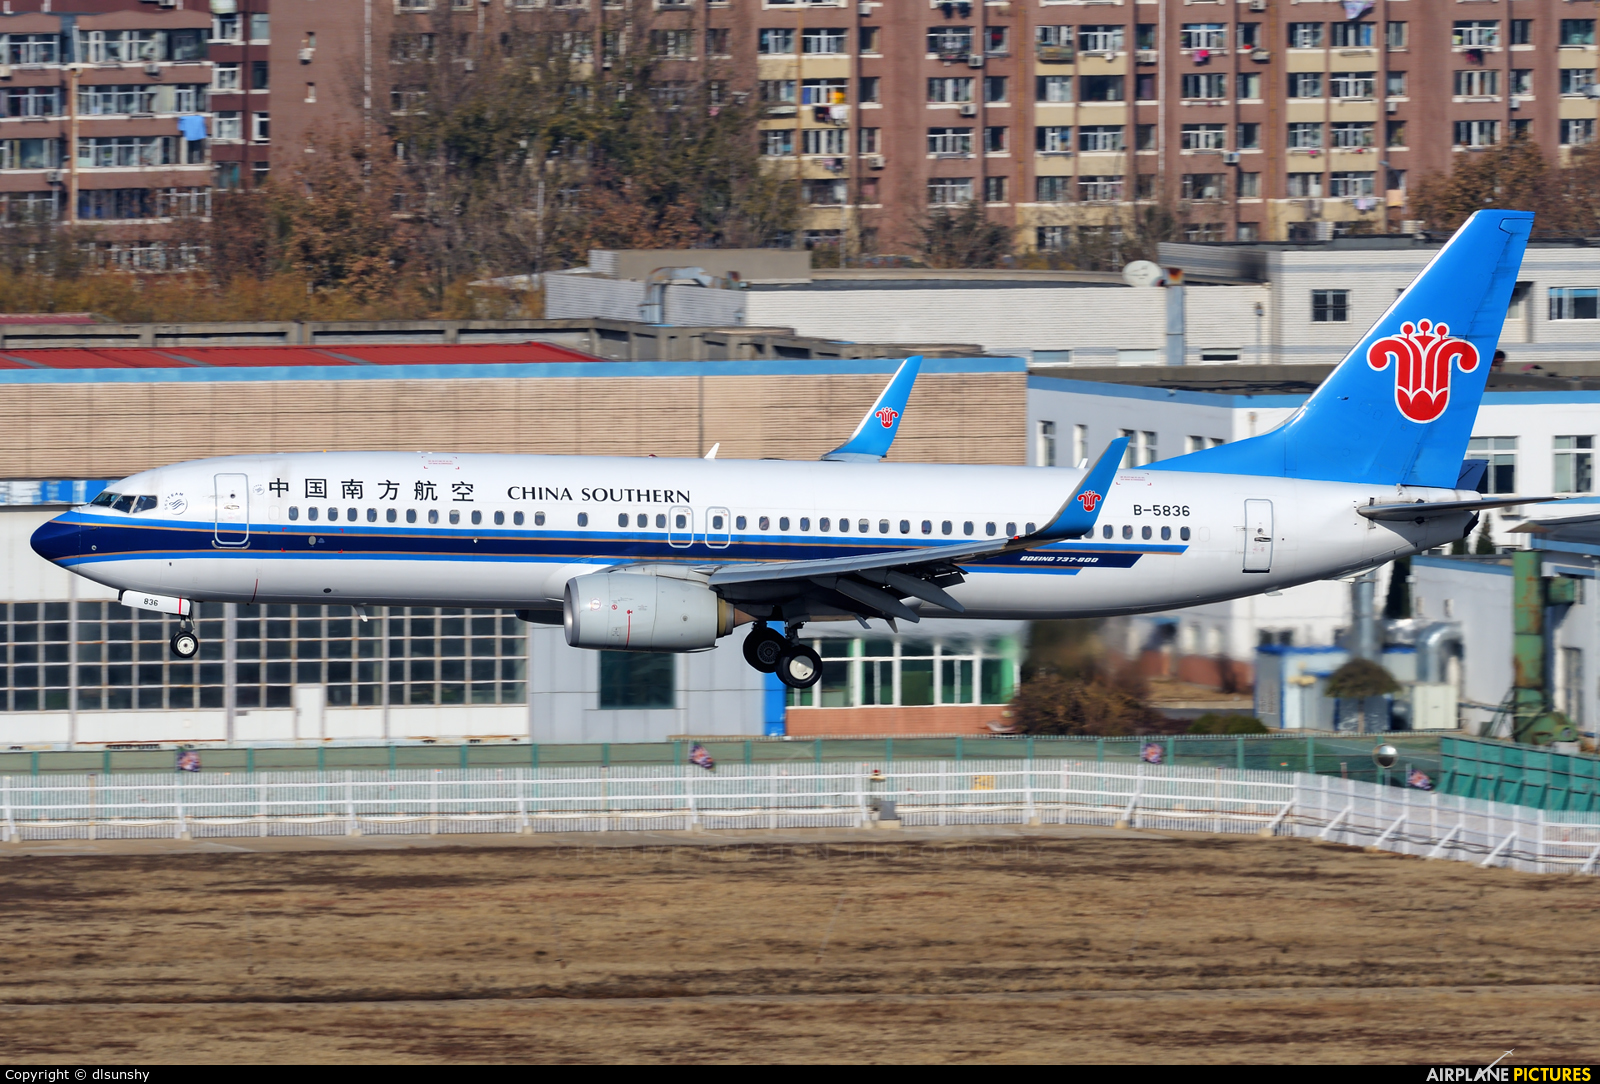 China Southern Airlines B-5836 aircraft at Dalian Zhoushuizi Int'l